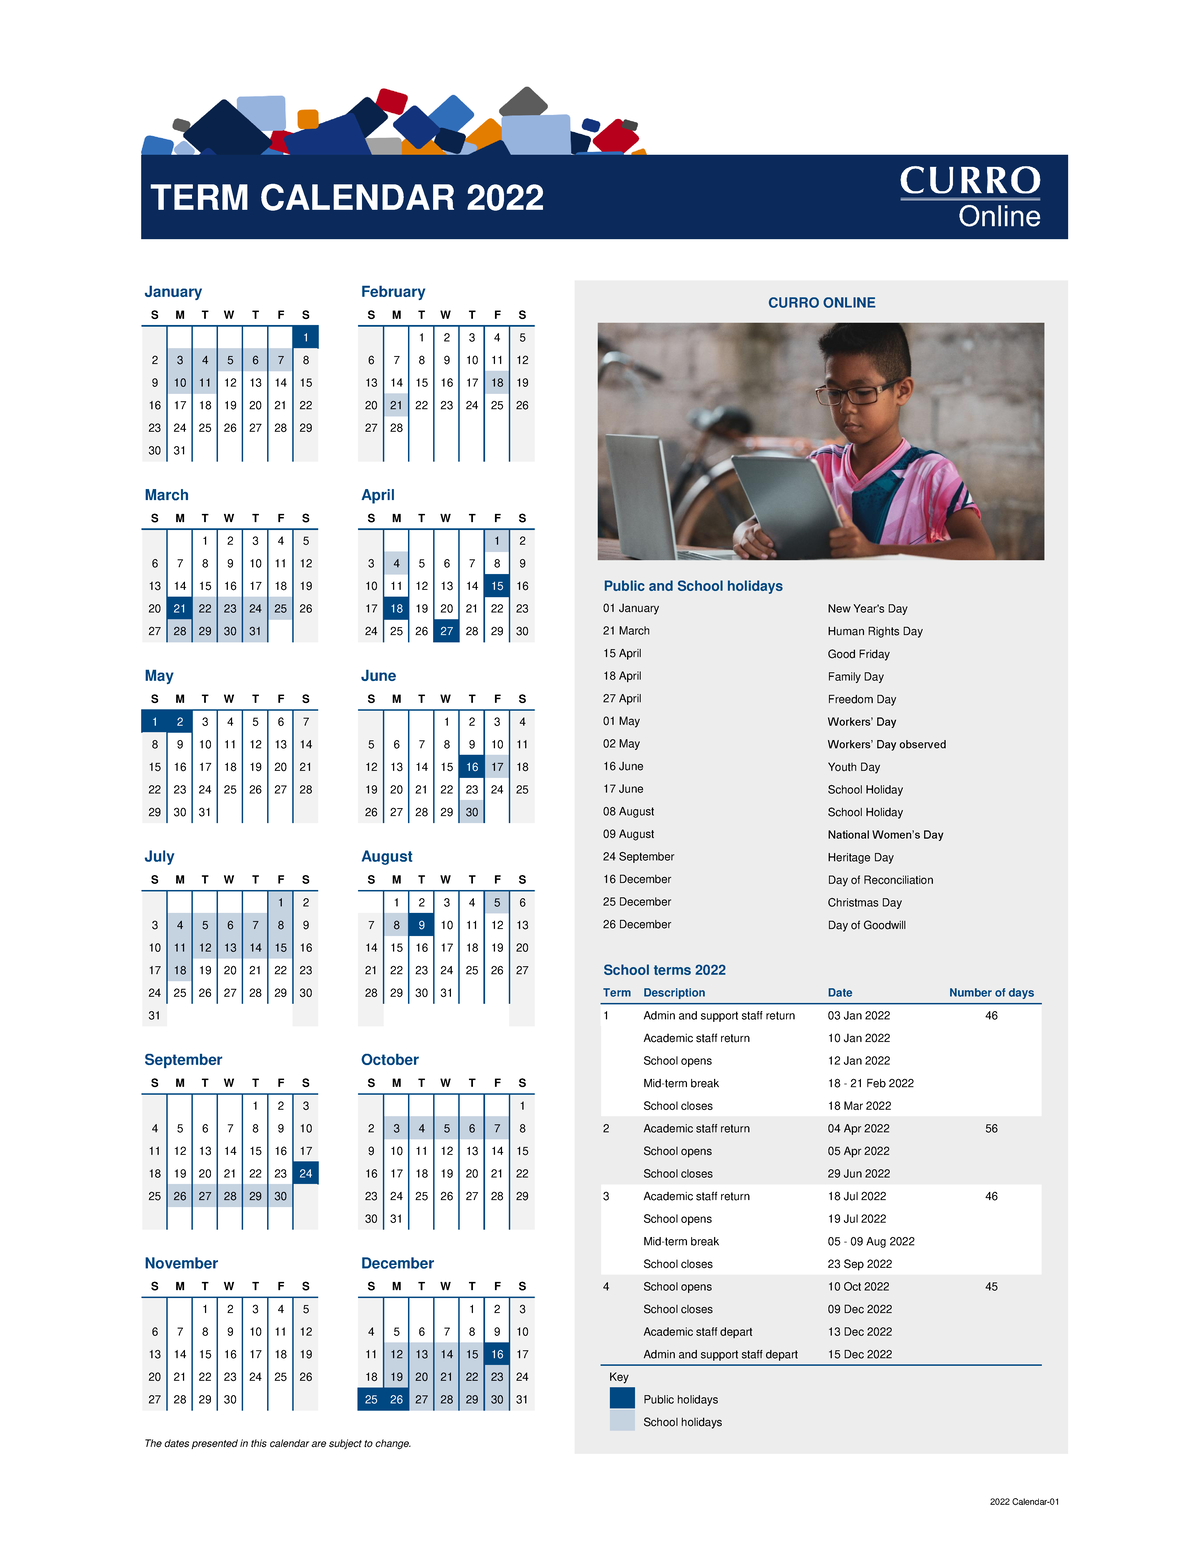 2022 Curro Online calendar 01 S M T W T F S S M T W T F S 1 1 1 2 3 4